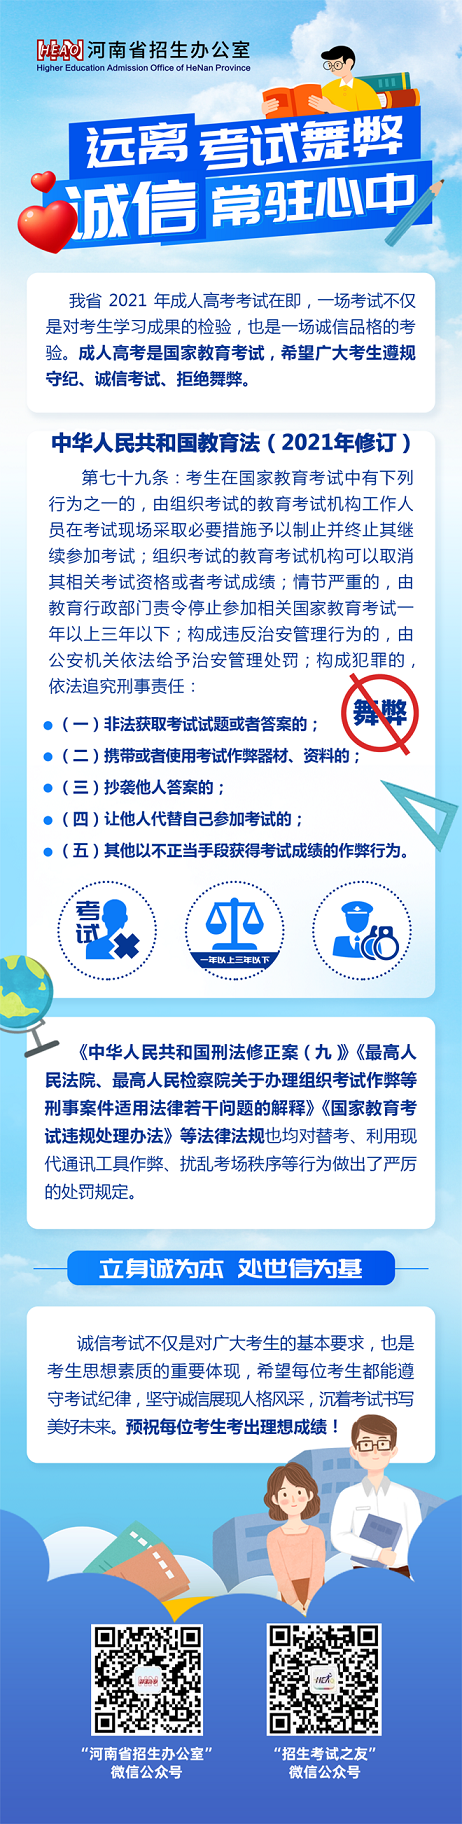 河南省2021年成人高考诚信考试提醒.png